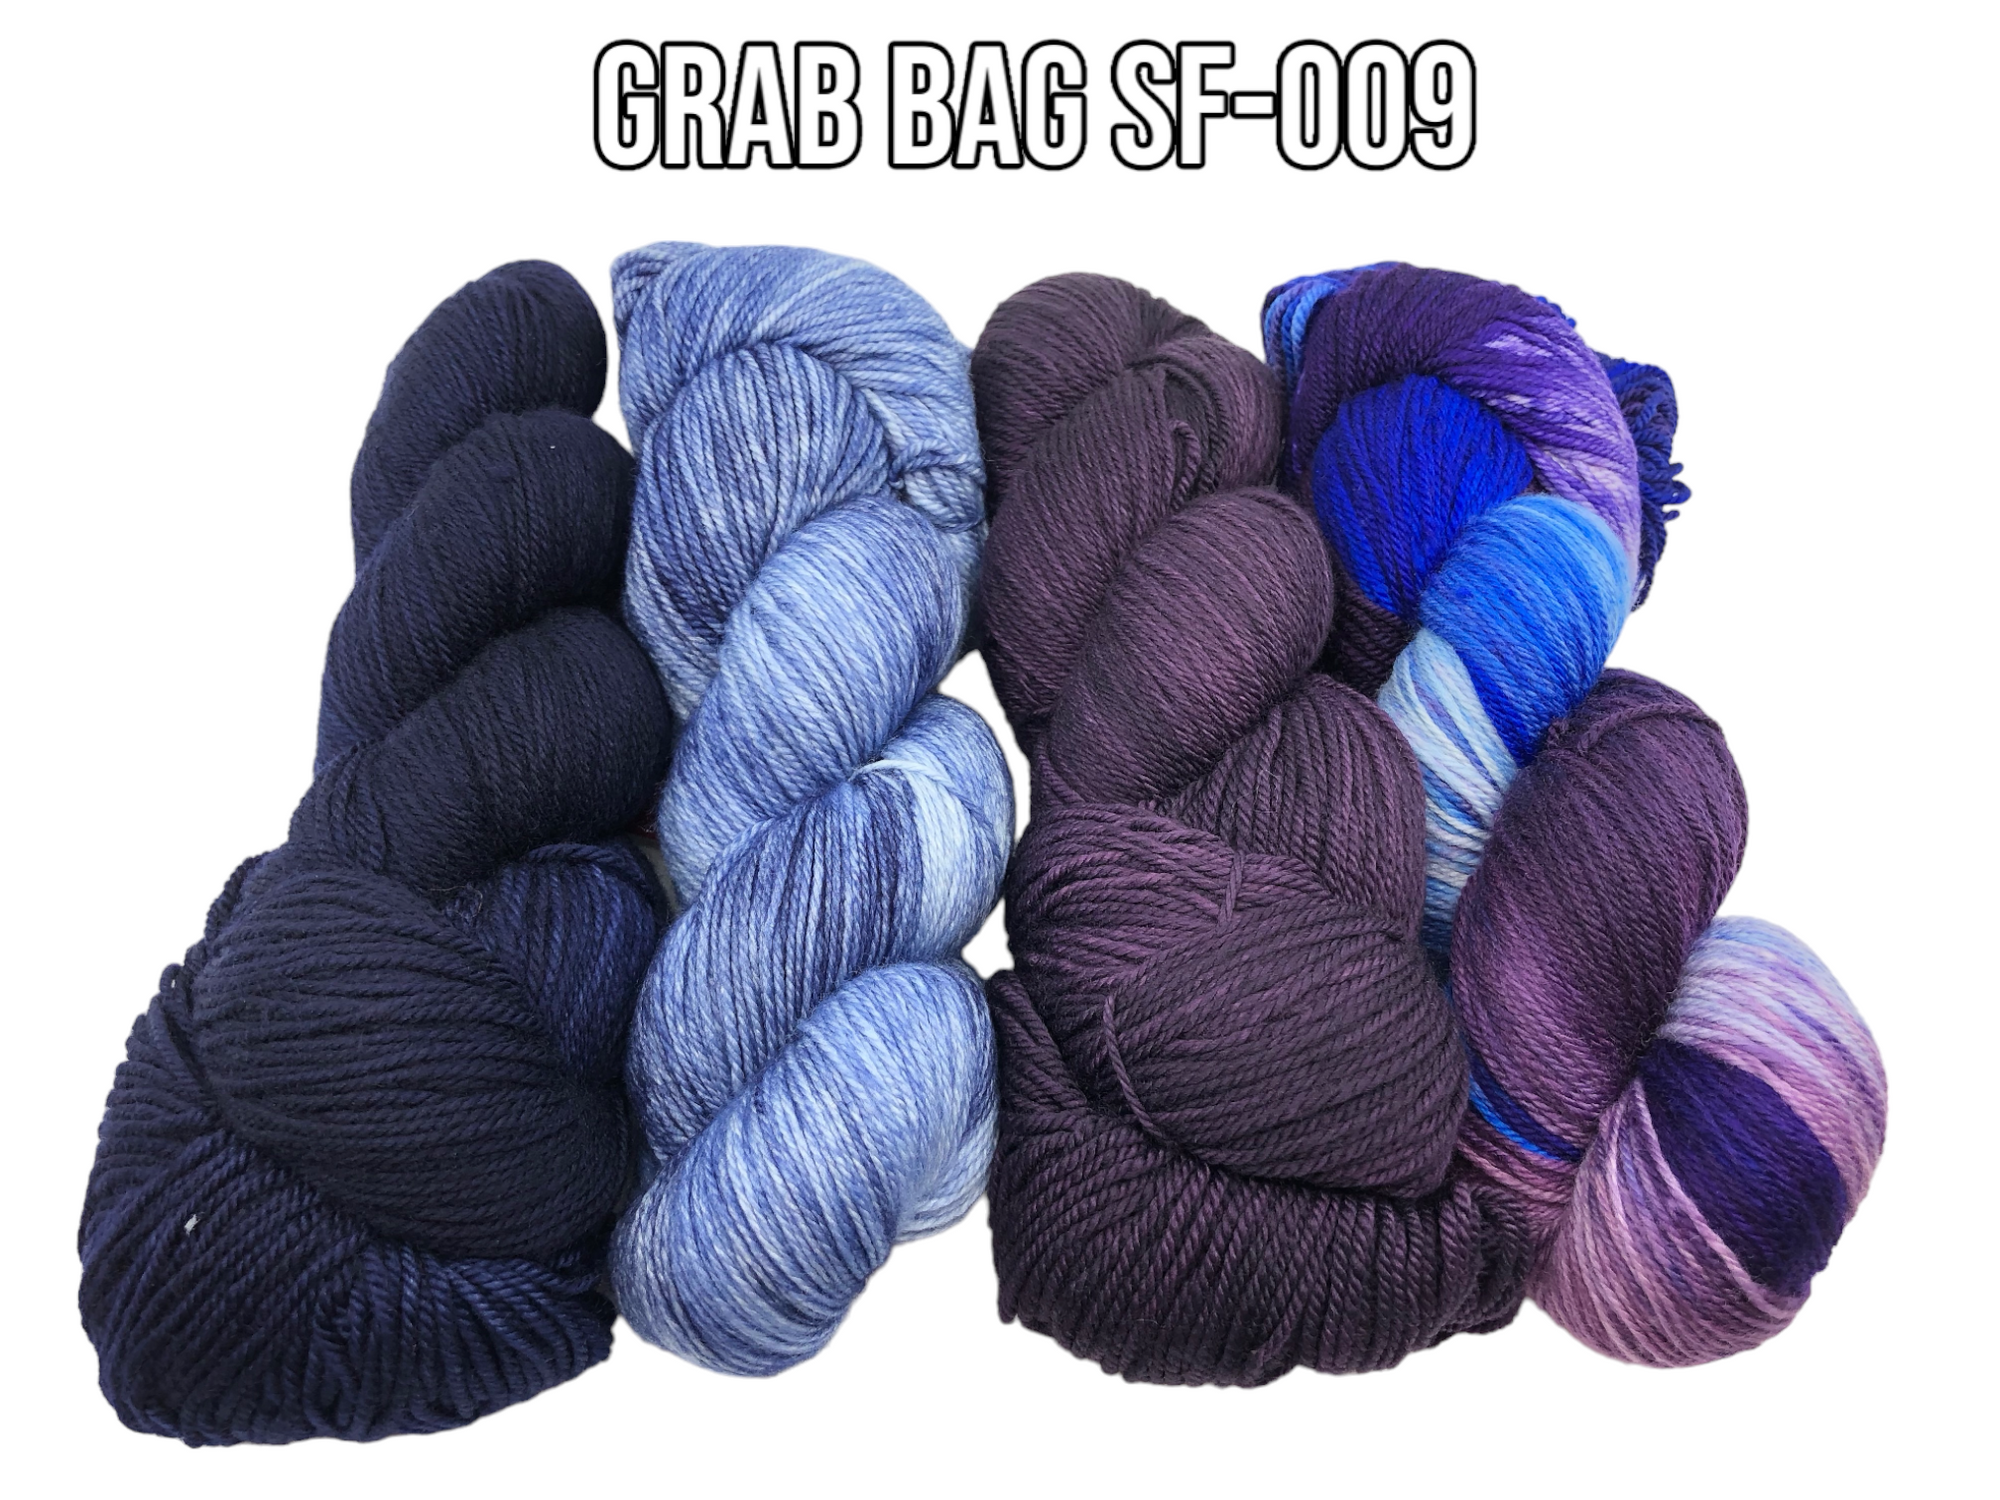 Grab Bag SF-009